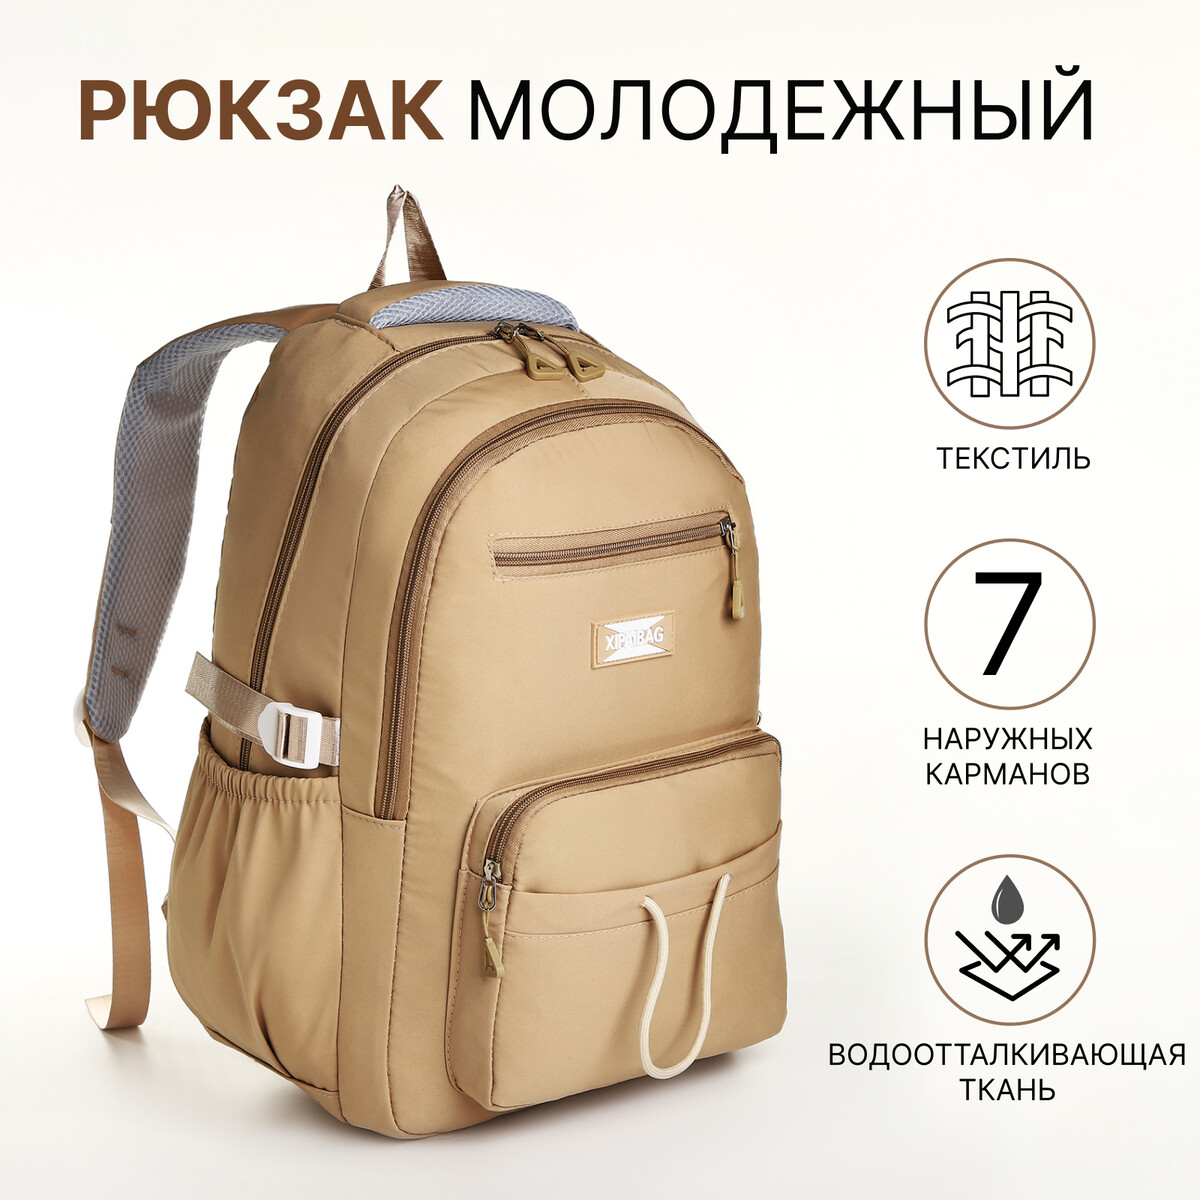 Рюкзак школьный из текстиля на молнии, 7 карманов, цвет коричневый рюкзак школьный из текстиля на молнии 6 карманов